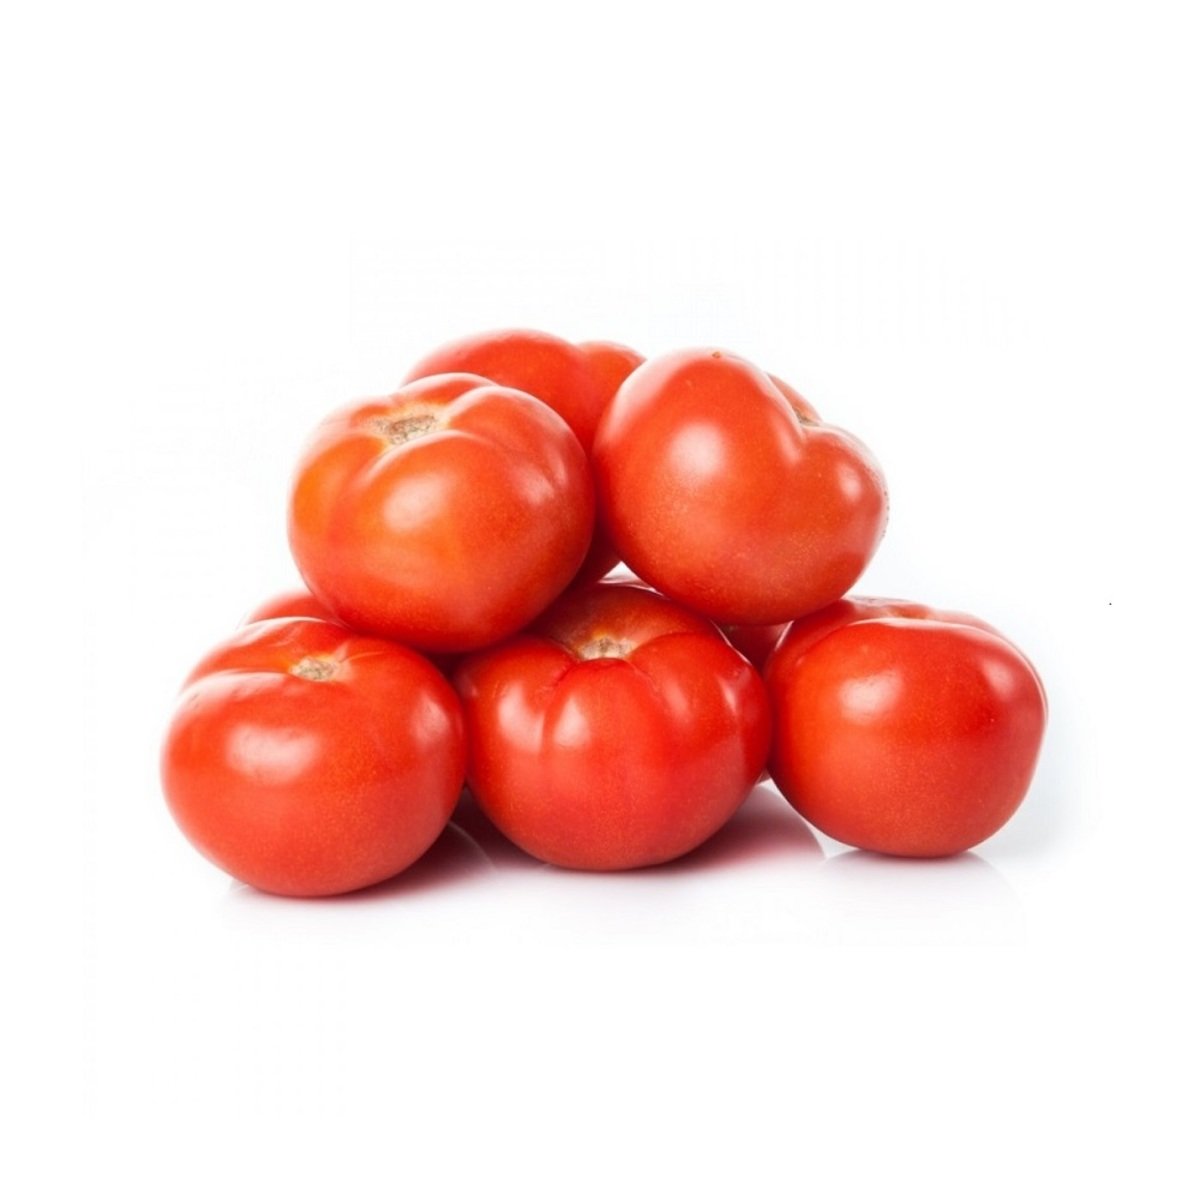 اشتري قم بشراء طماطم سوري 1 كجم تقريباً Online at Best Price من الموقع - من لولو هايبر ماركت Tomatoes في السعودية